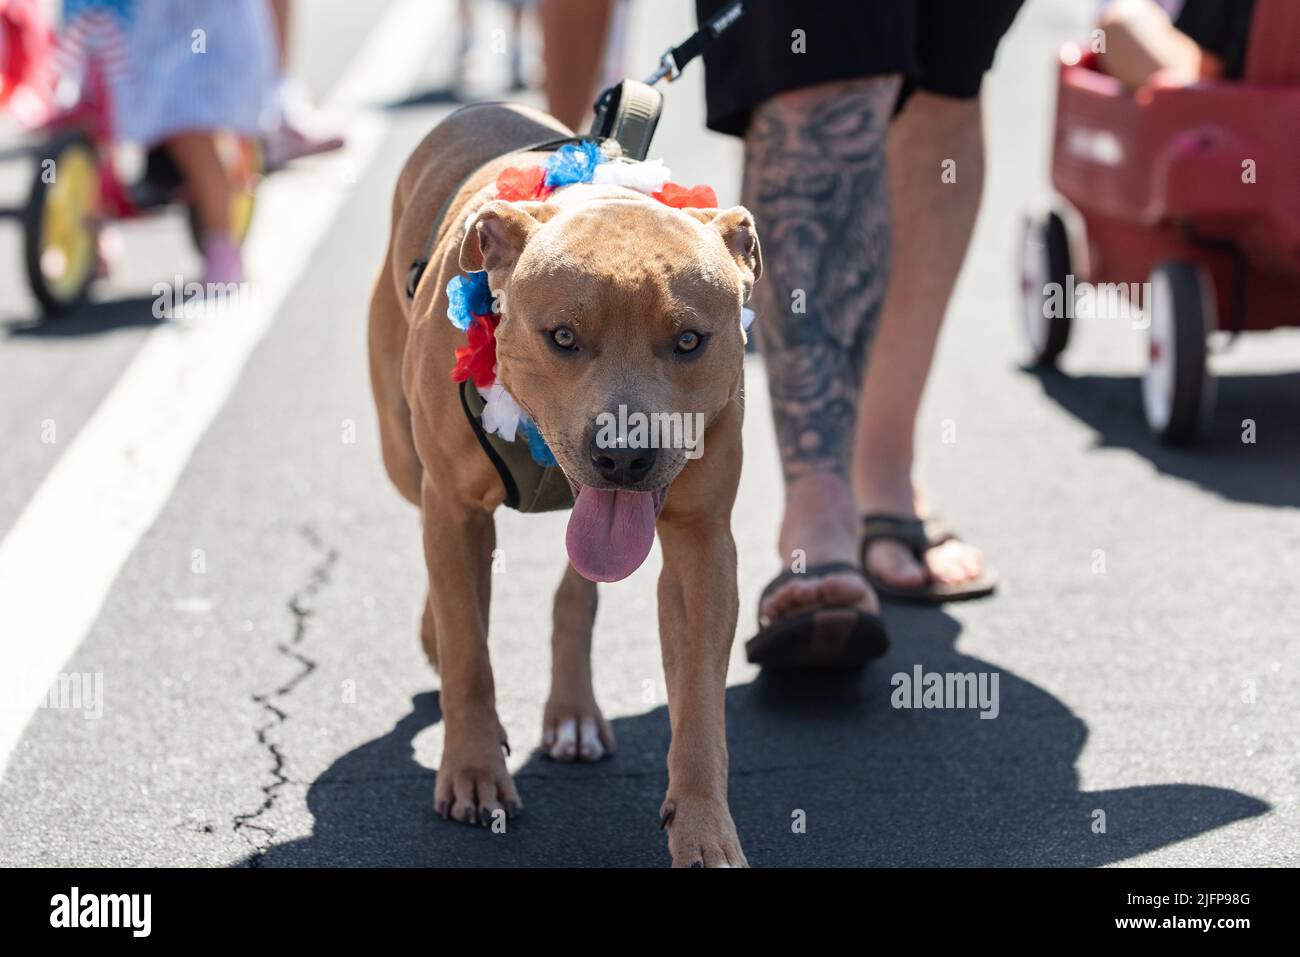 Die Holiday Parade in einer kleinen Stadt ist der perfekte Ort, um mit dem Pit Bull Dog mitten auf der Straße spazieren zu gehen. Stockfoto